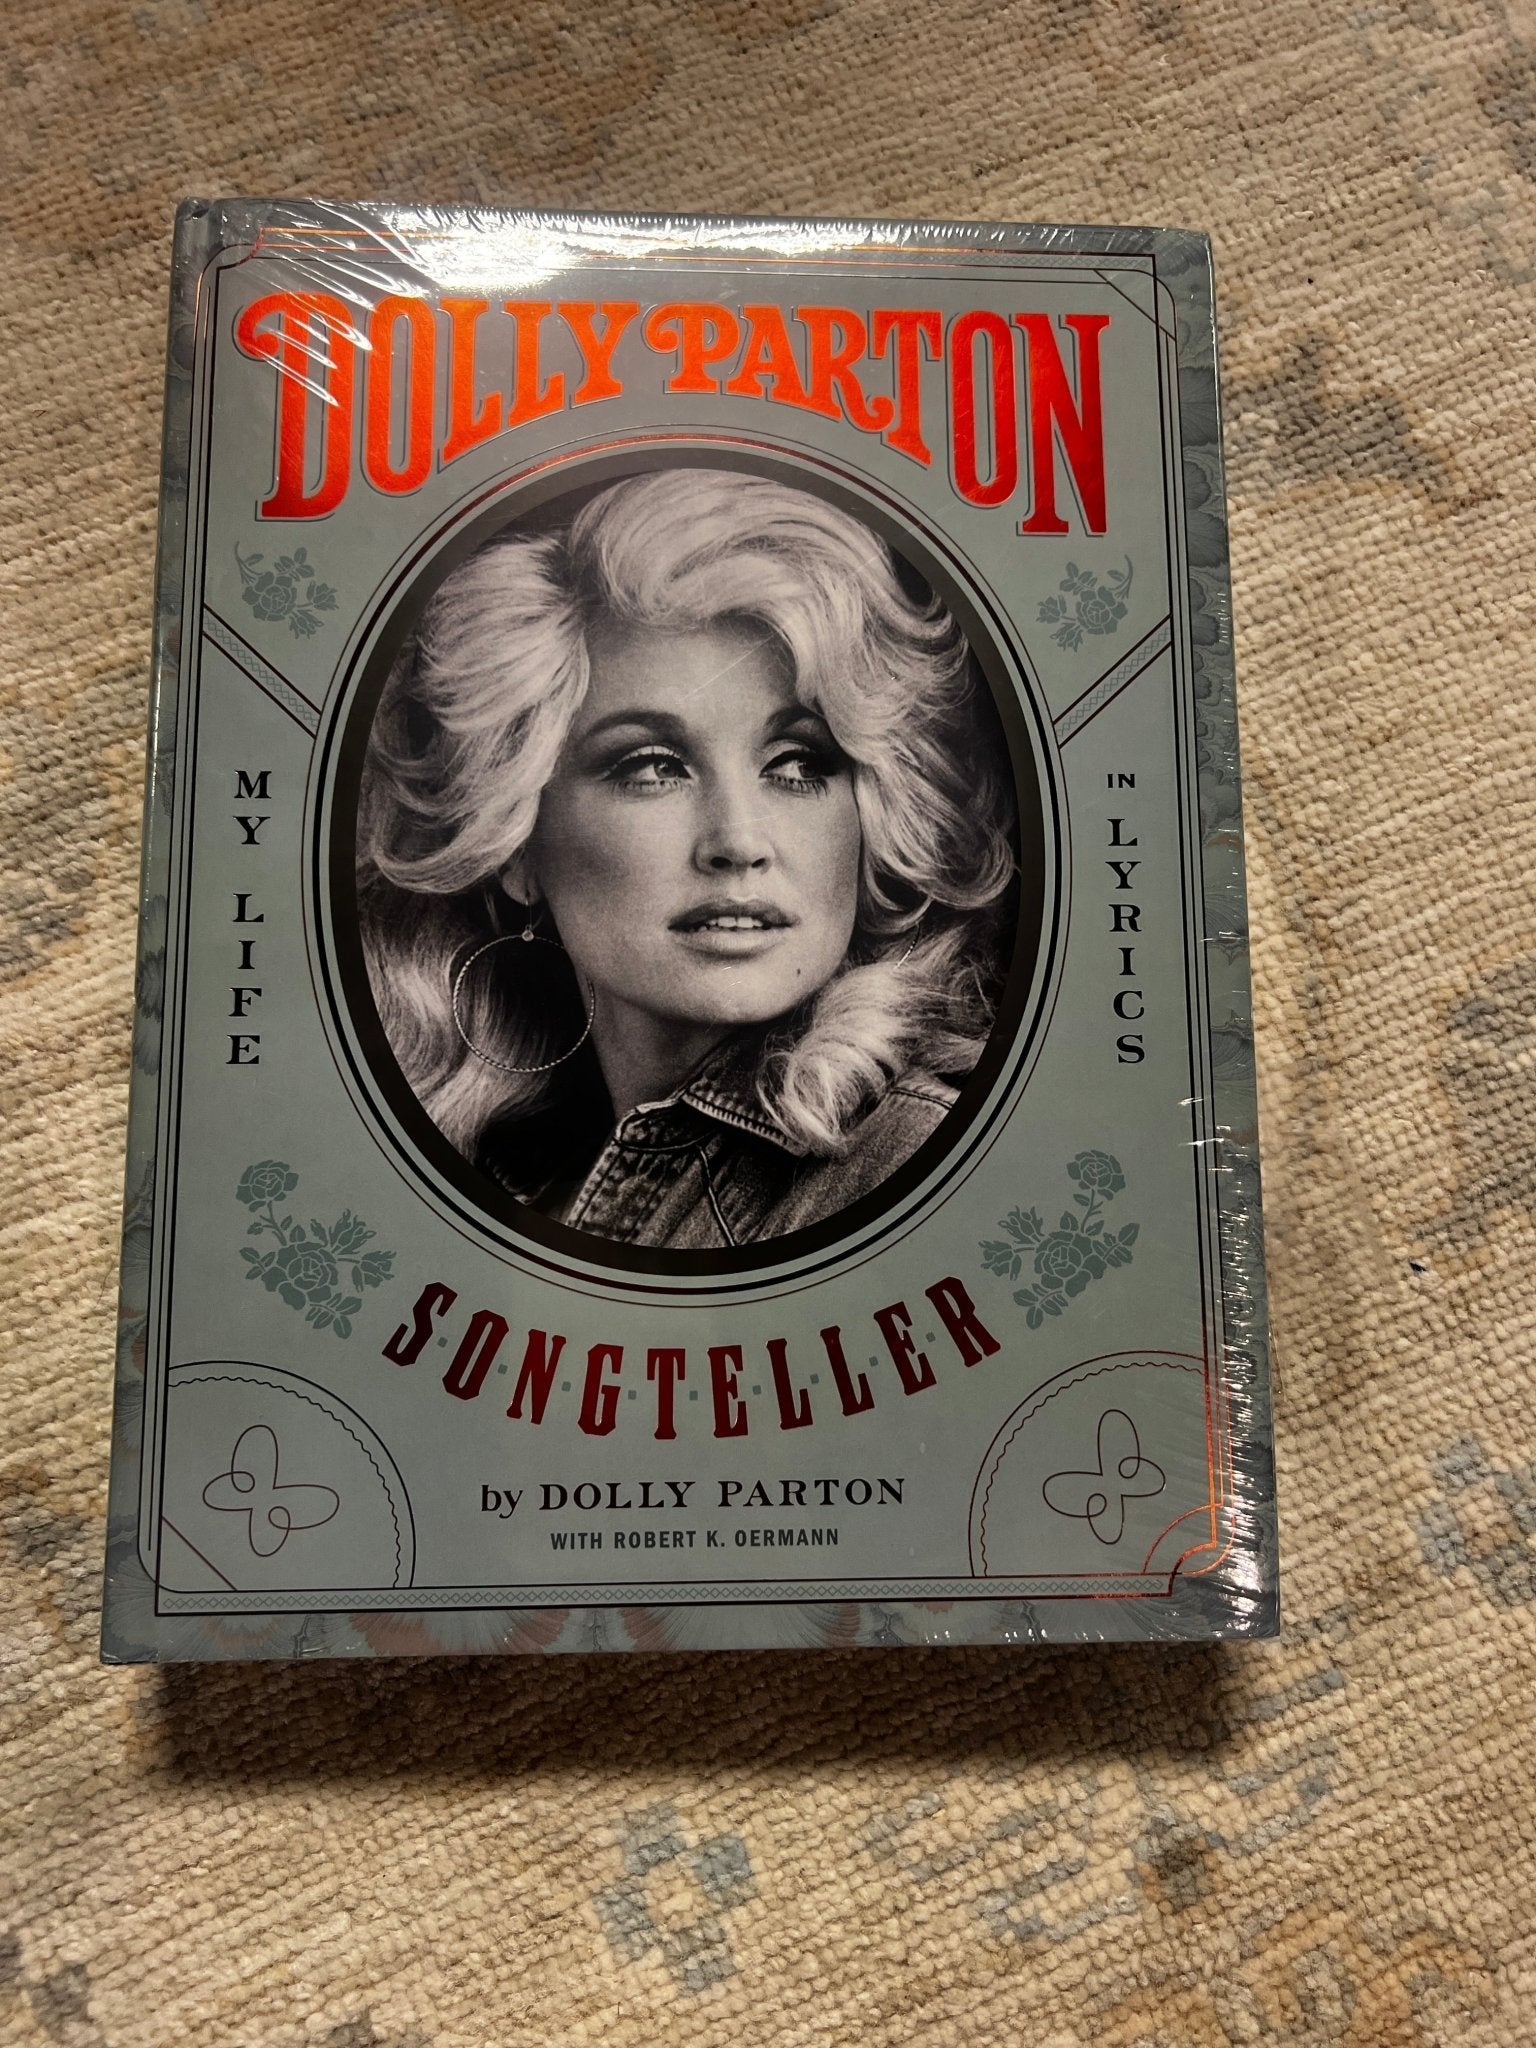 Dolly Parton: Songteller Coffee Table Book | Banana Manor Rug Company